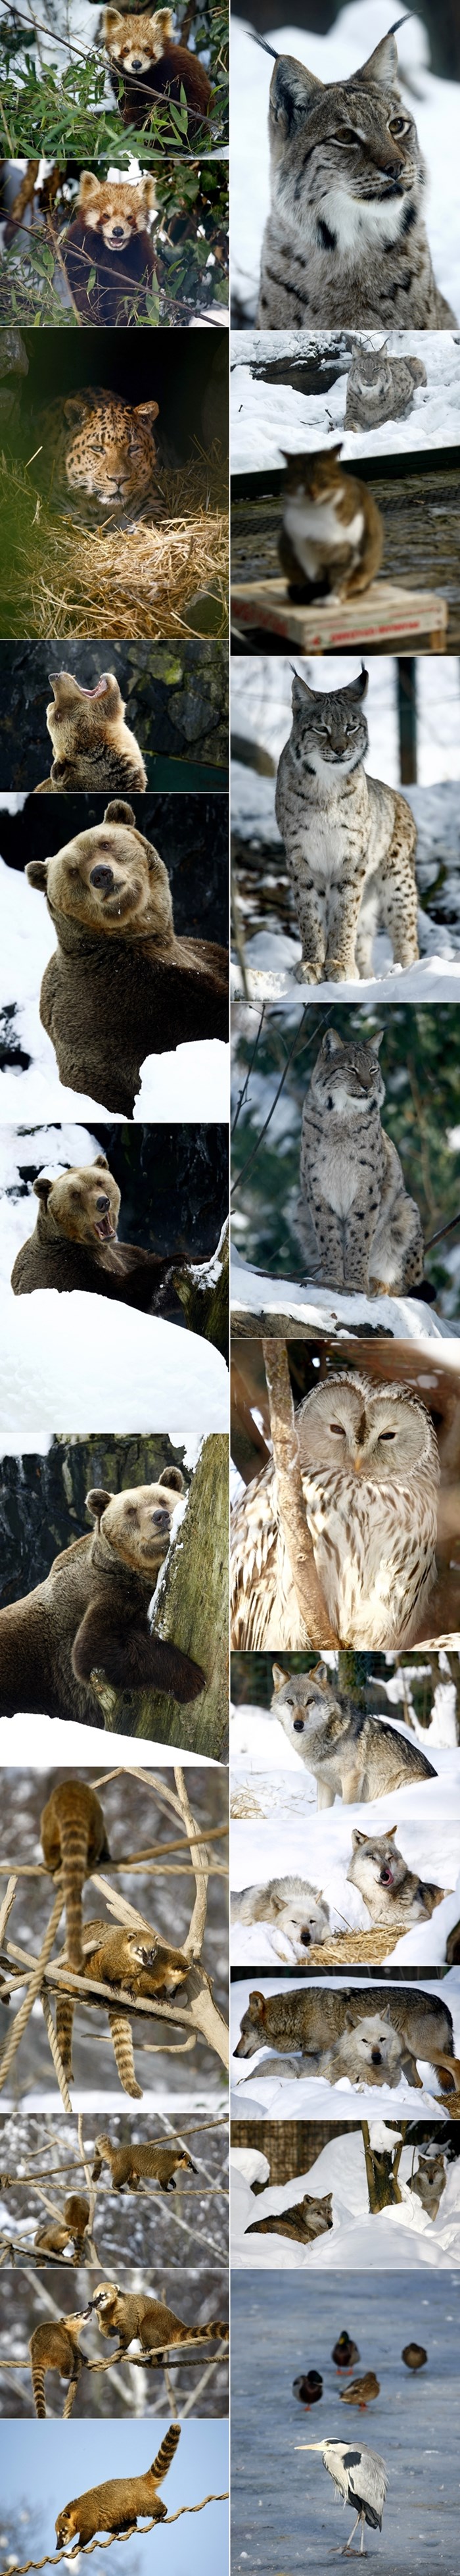 Ovako životinje u zagrebačkom ZOO-u preživljavaju snijeg